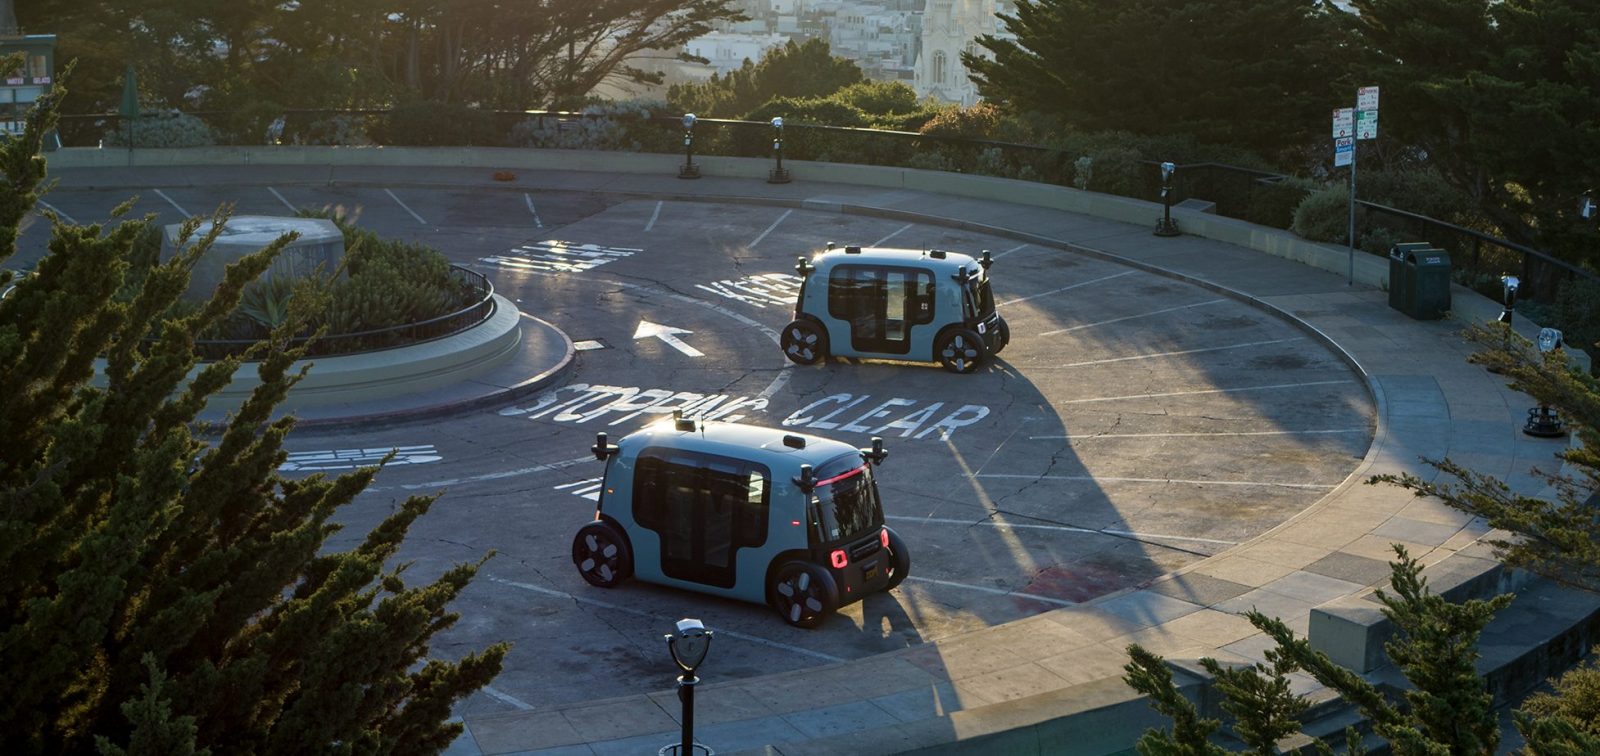 s zoox unveils autonomous electric vehicle battery pack